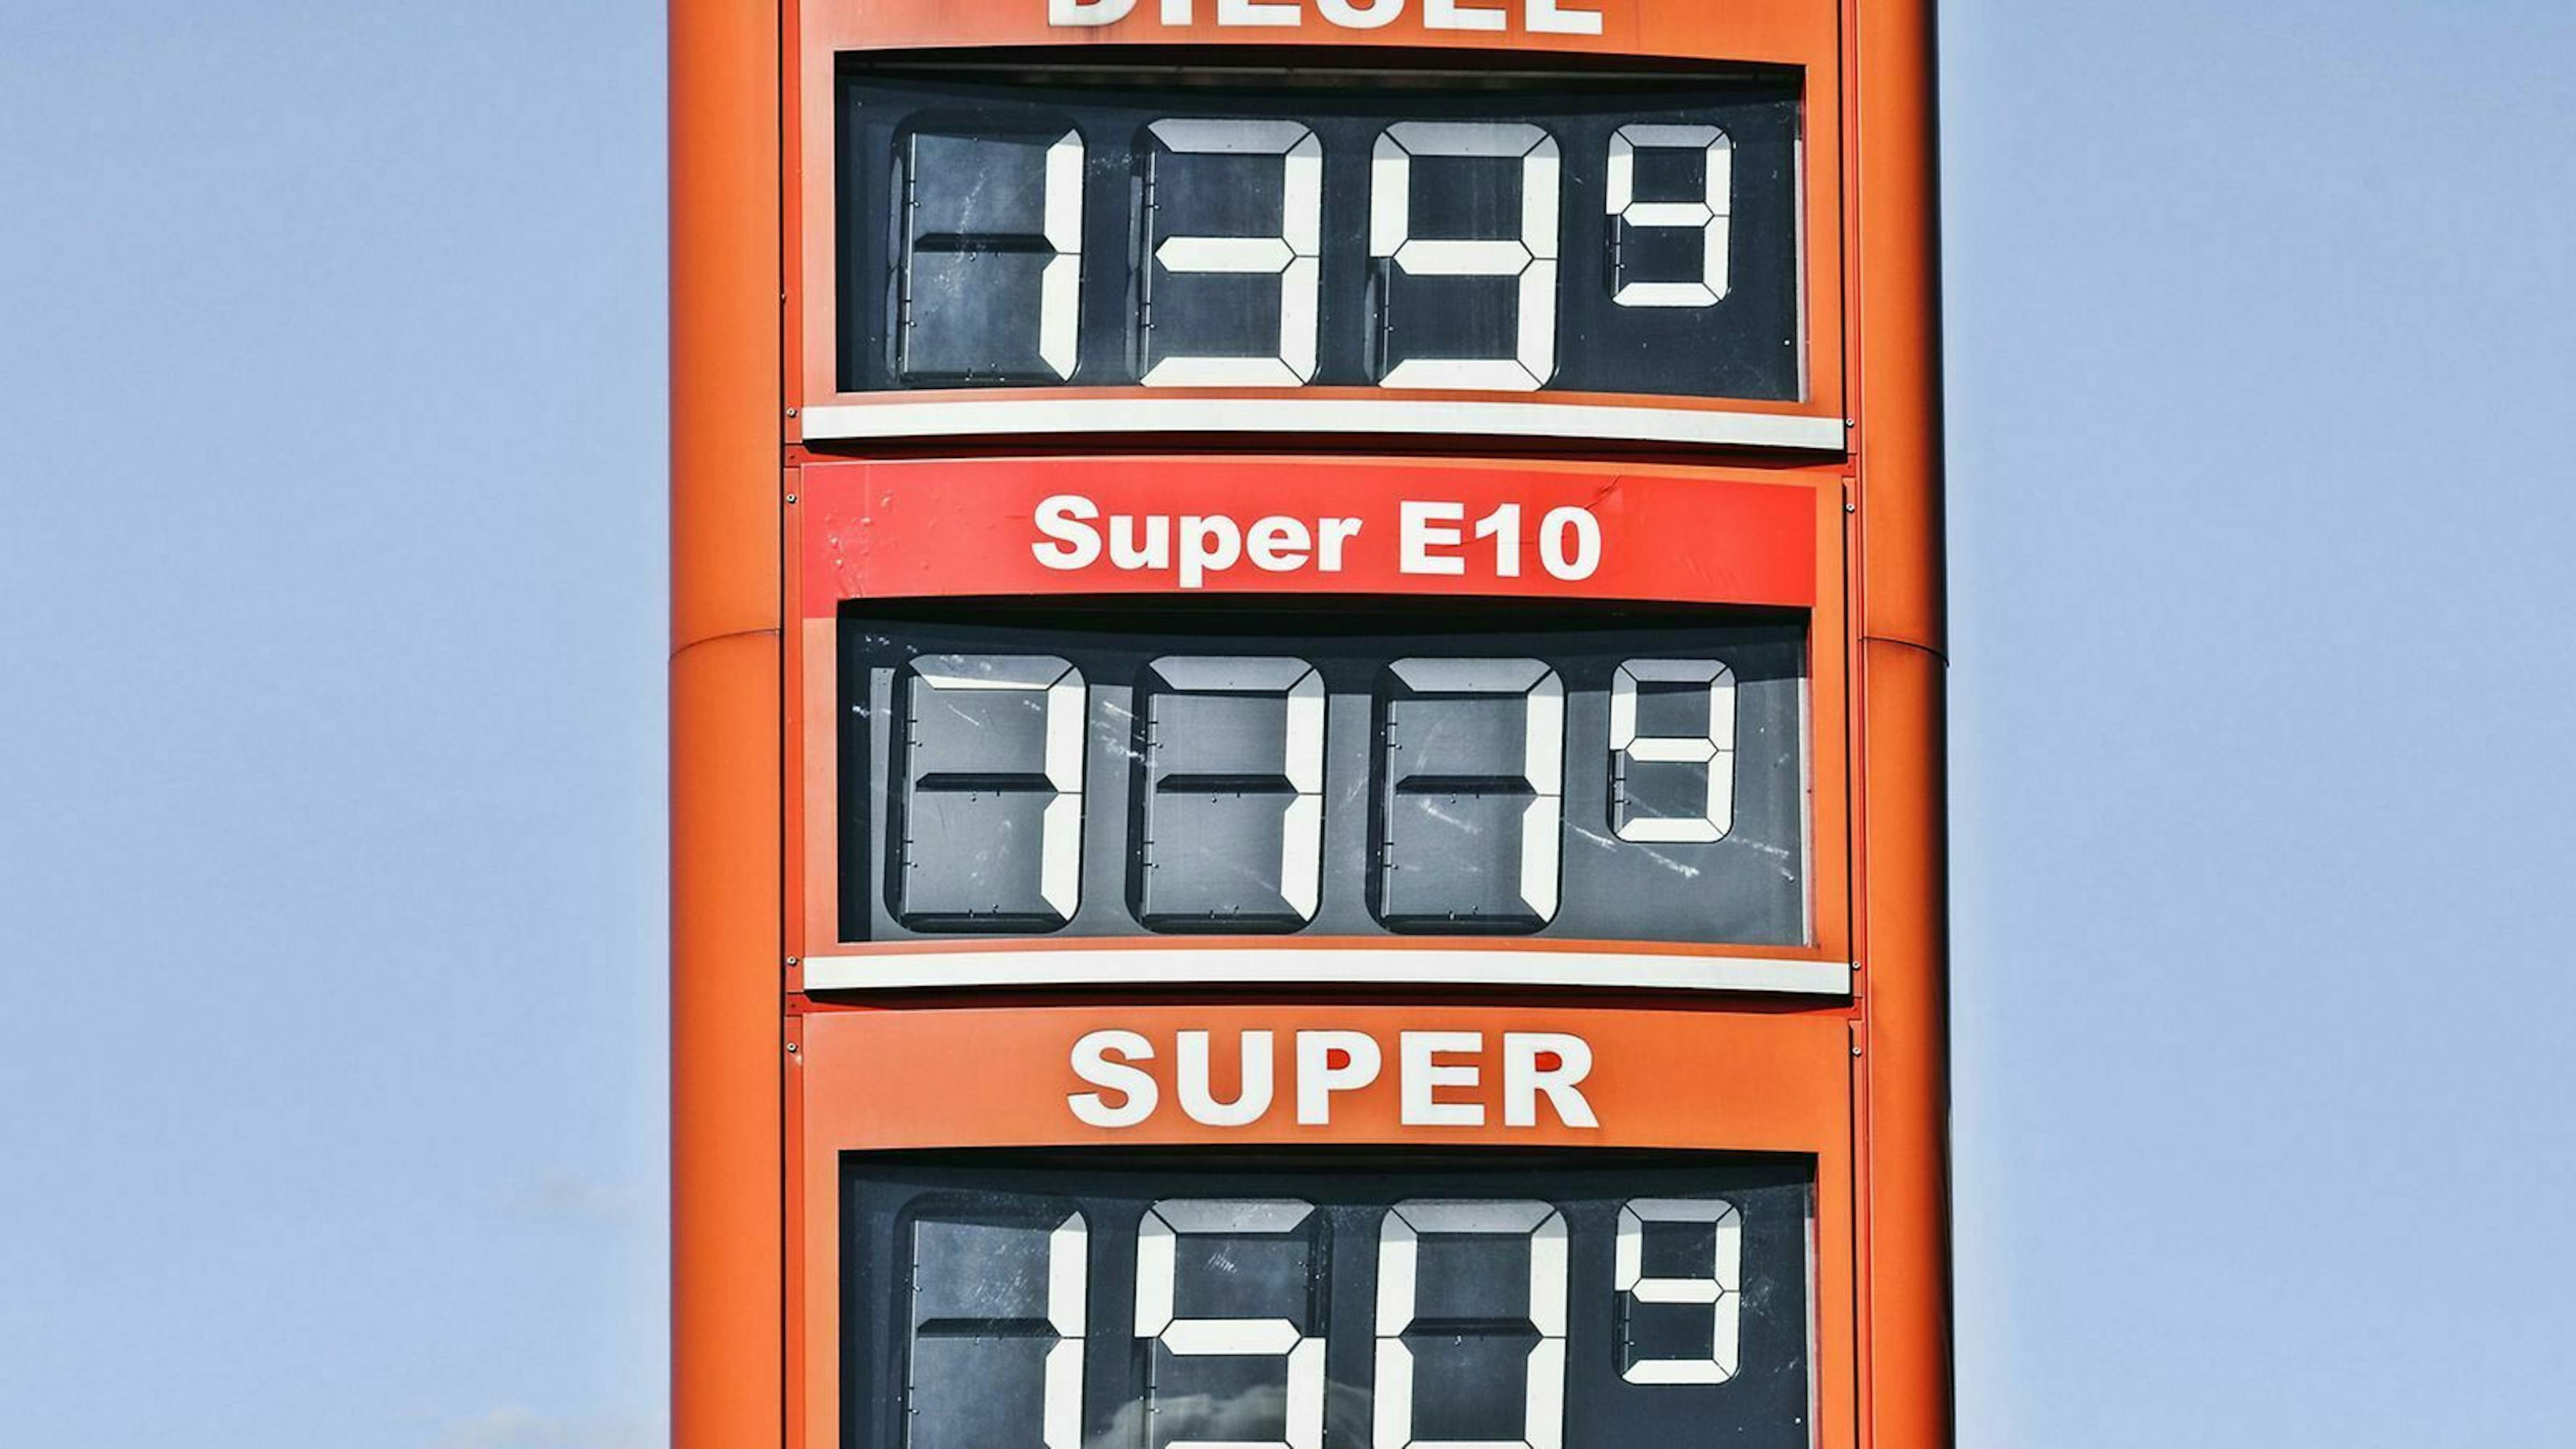 Der Preis für Kraftstoff setzt sich aus verschiedenen Steuern und schwankenden Faktoren zusammen.